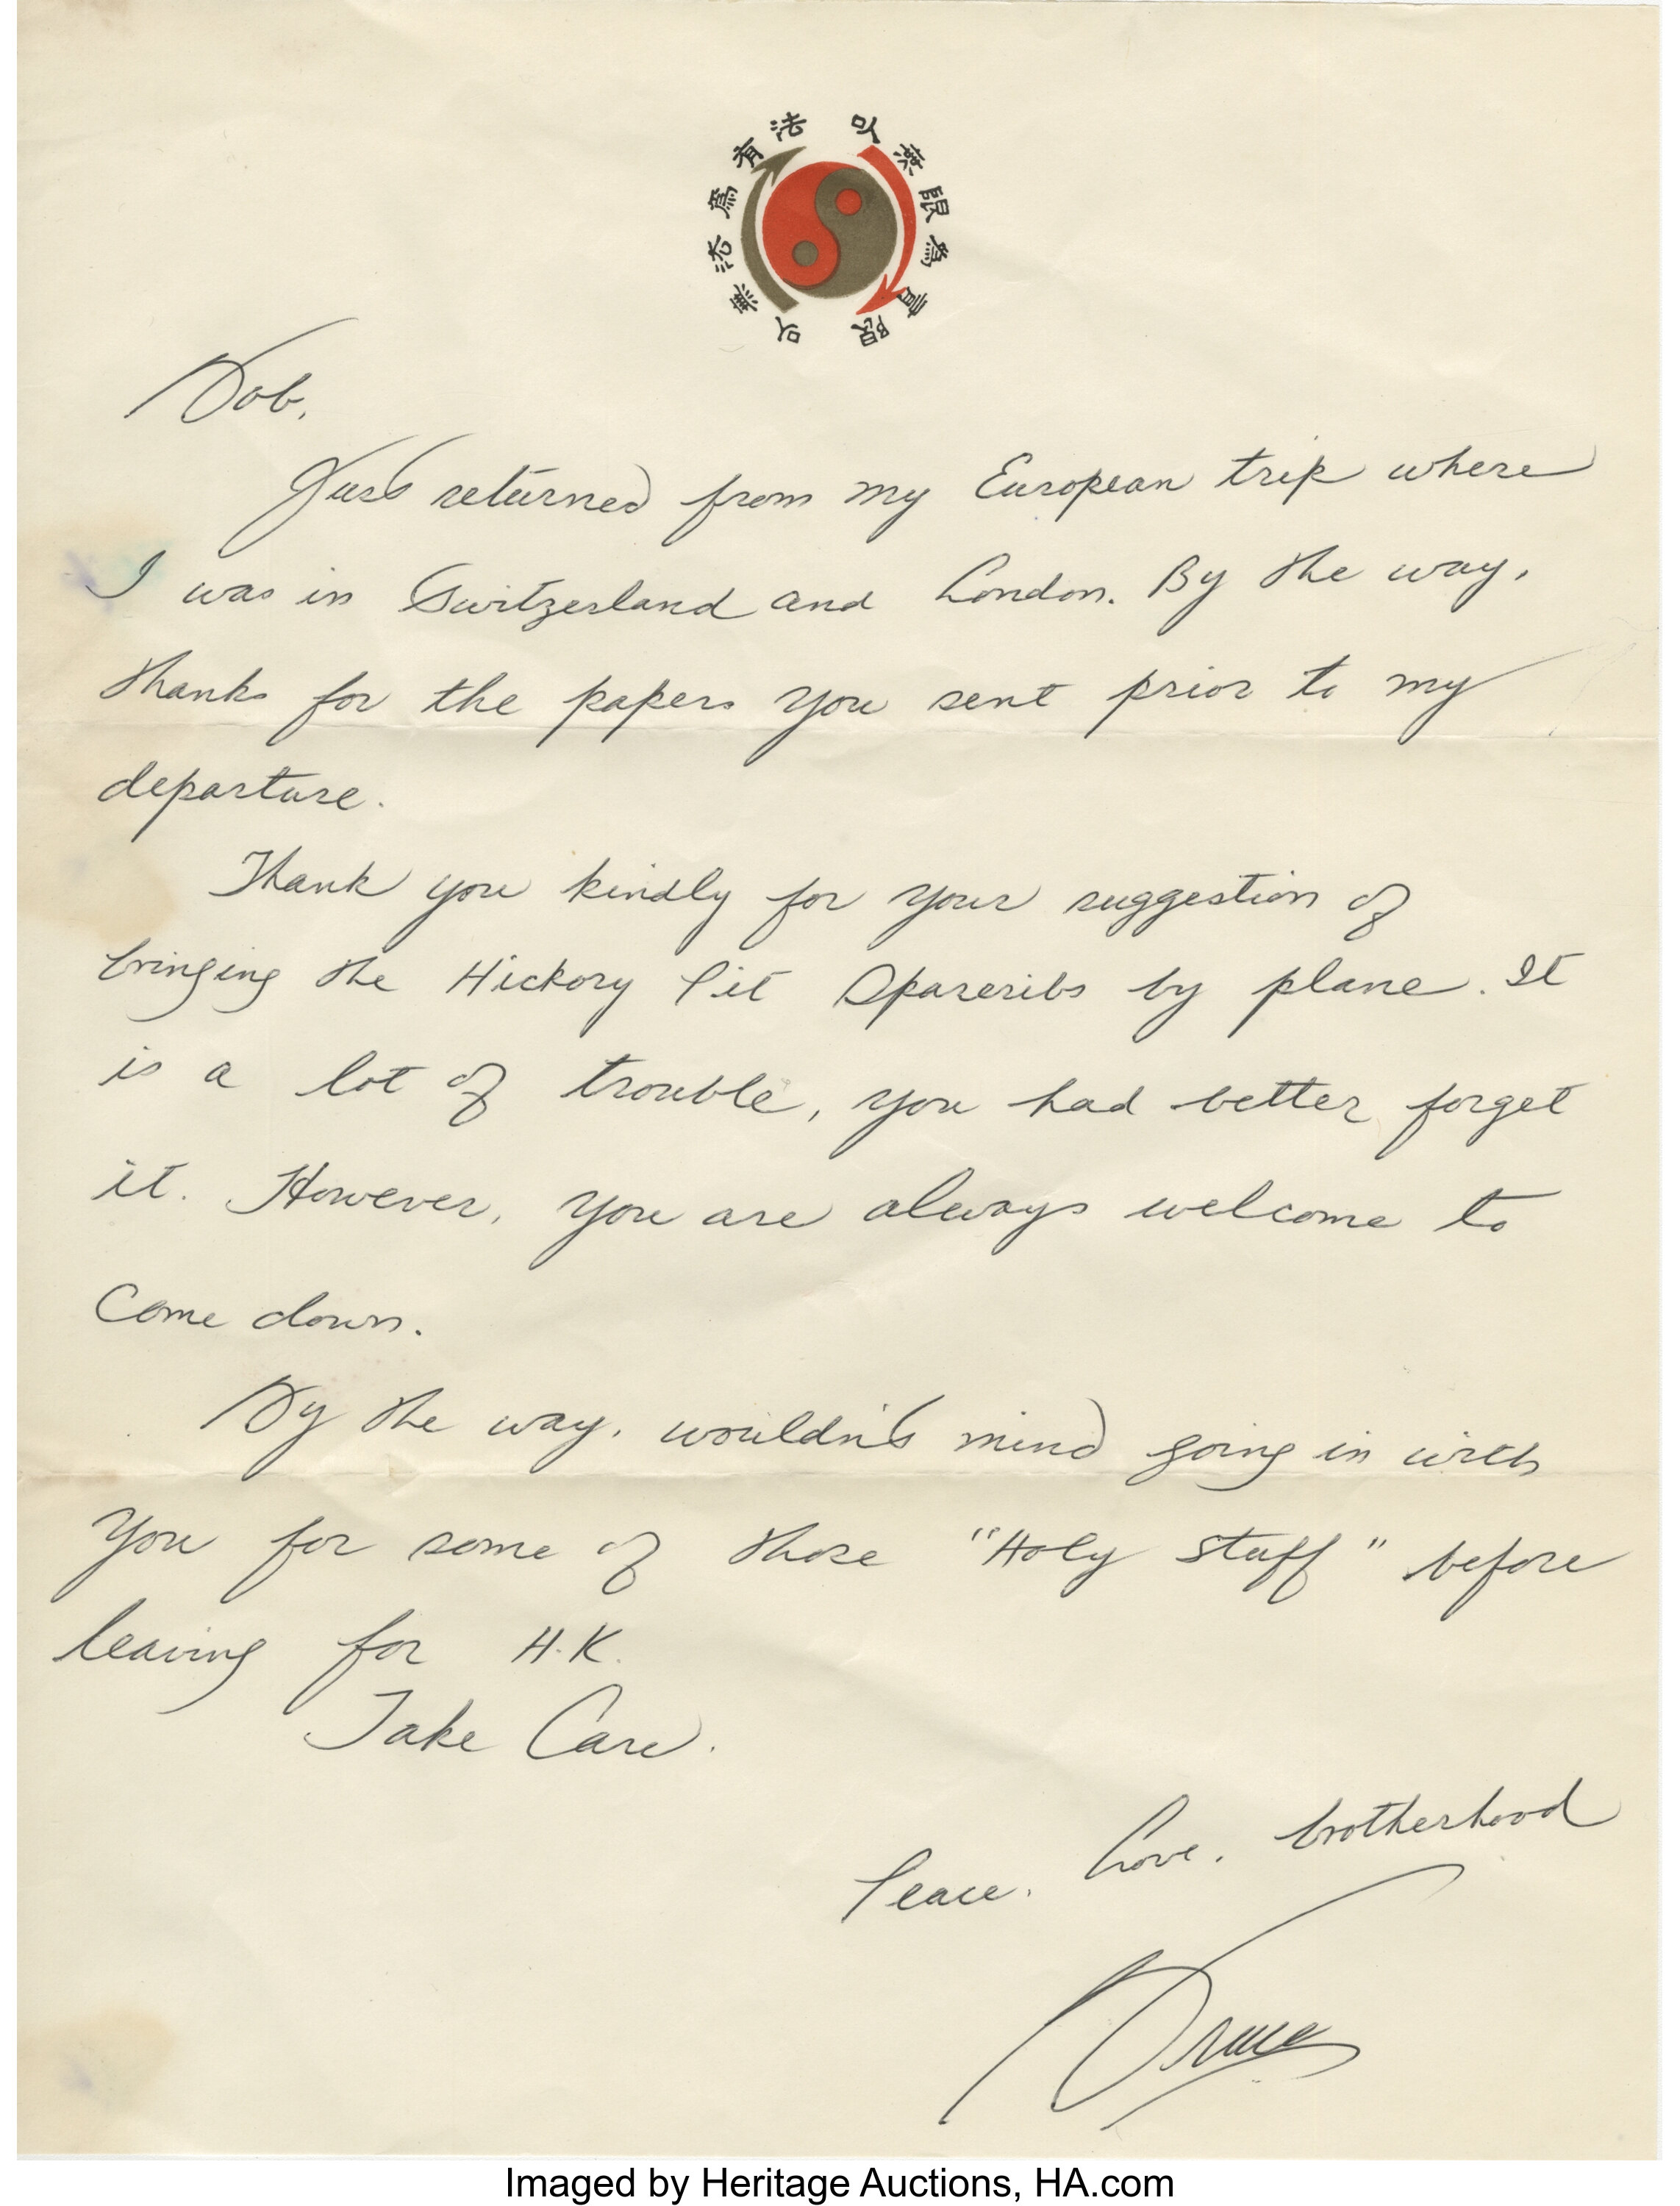 Bruce Lee Handwritten Letter Signed 